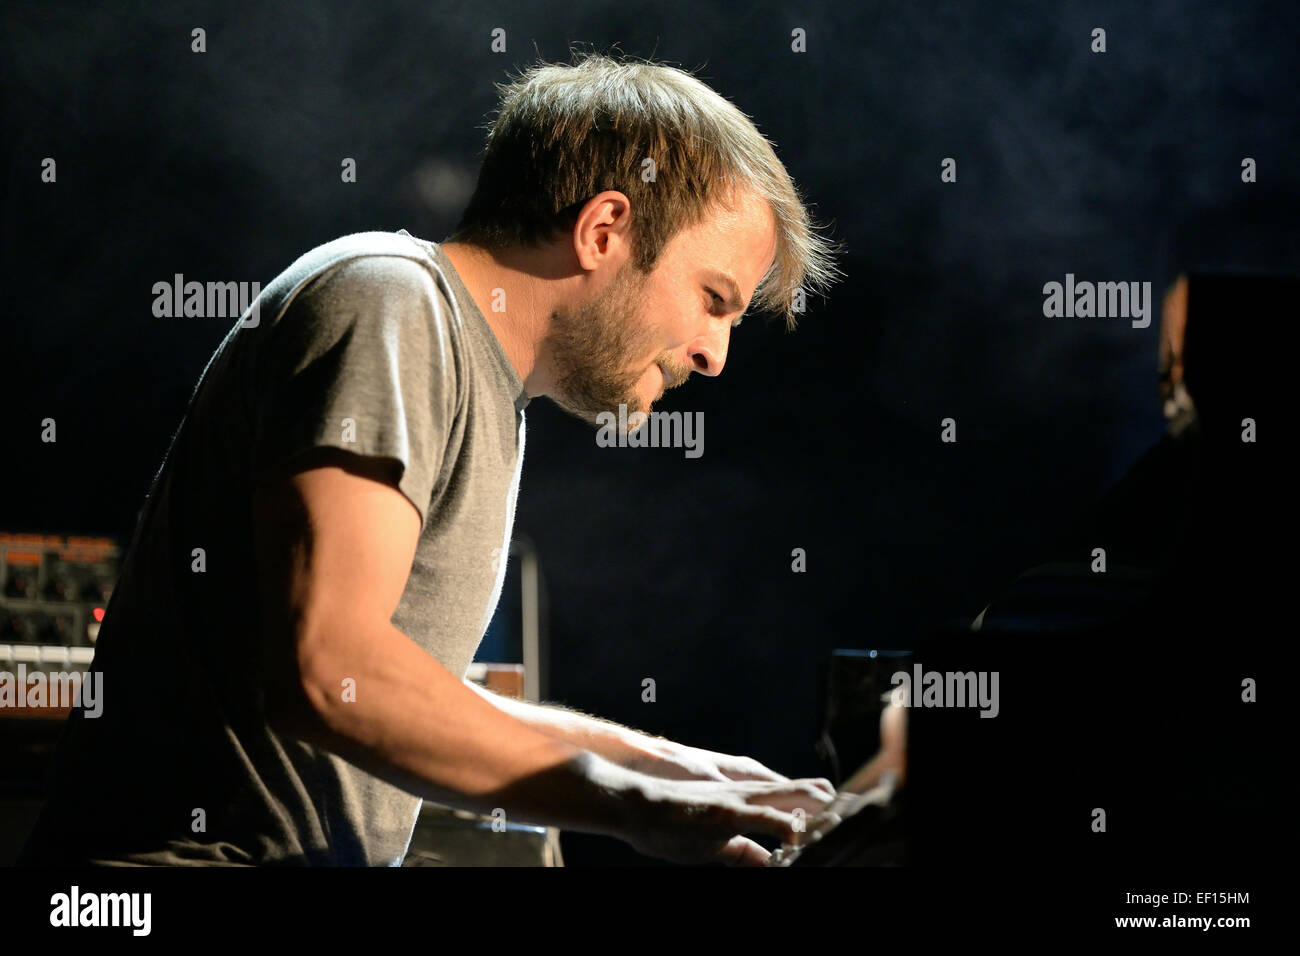 Barcellona - Jun 12: Nils Frahm (MUSICISTA TEDESCO, compositore e pianista) performance al Sonar Festival. Foto Stock